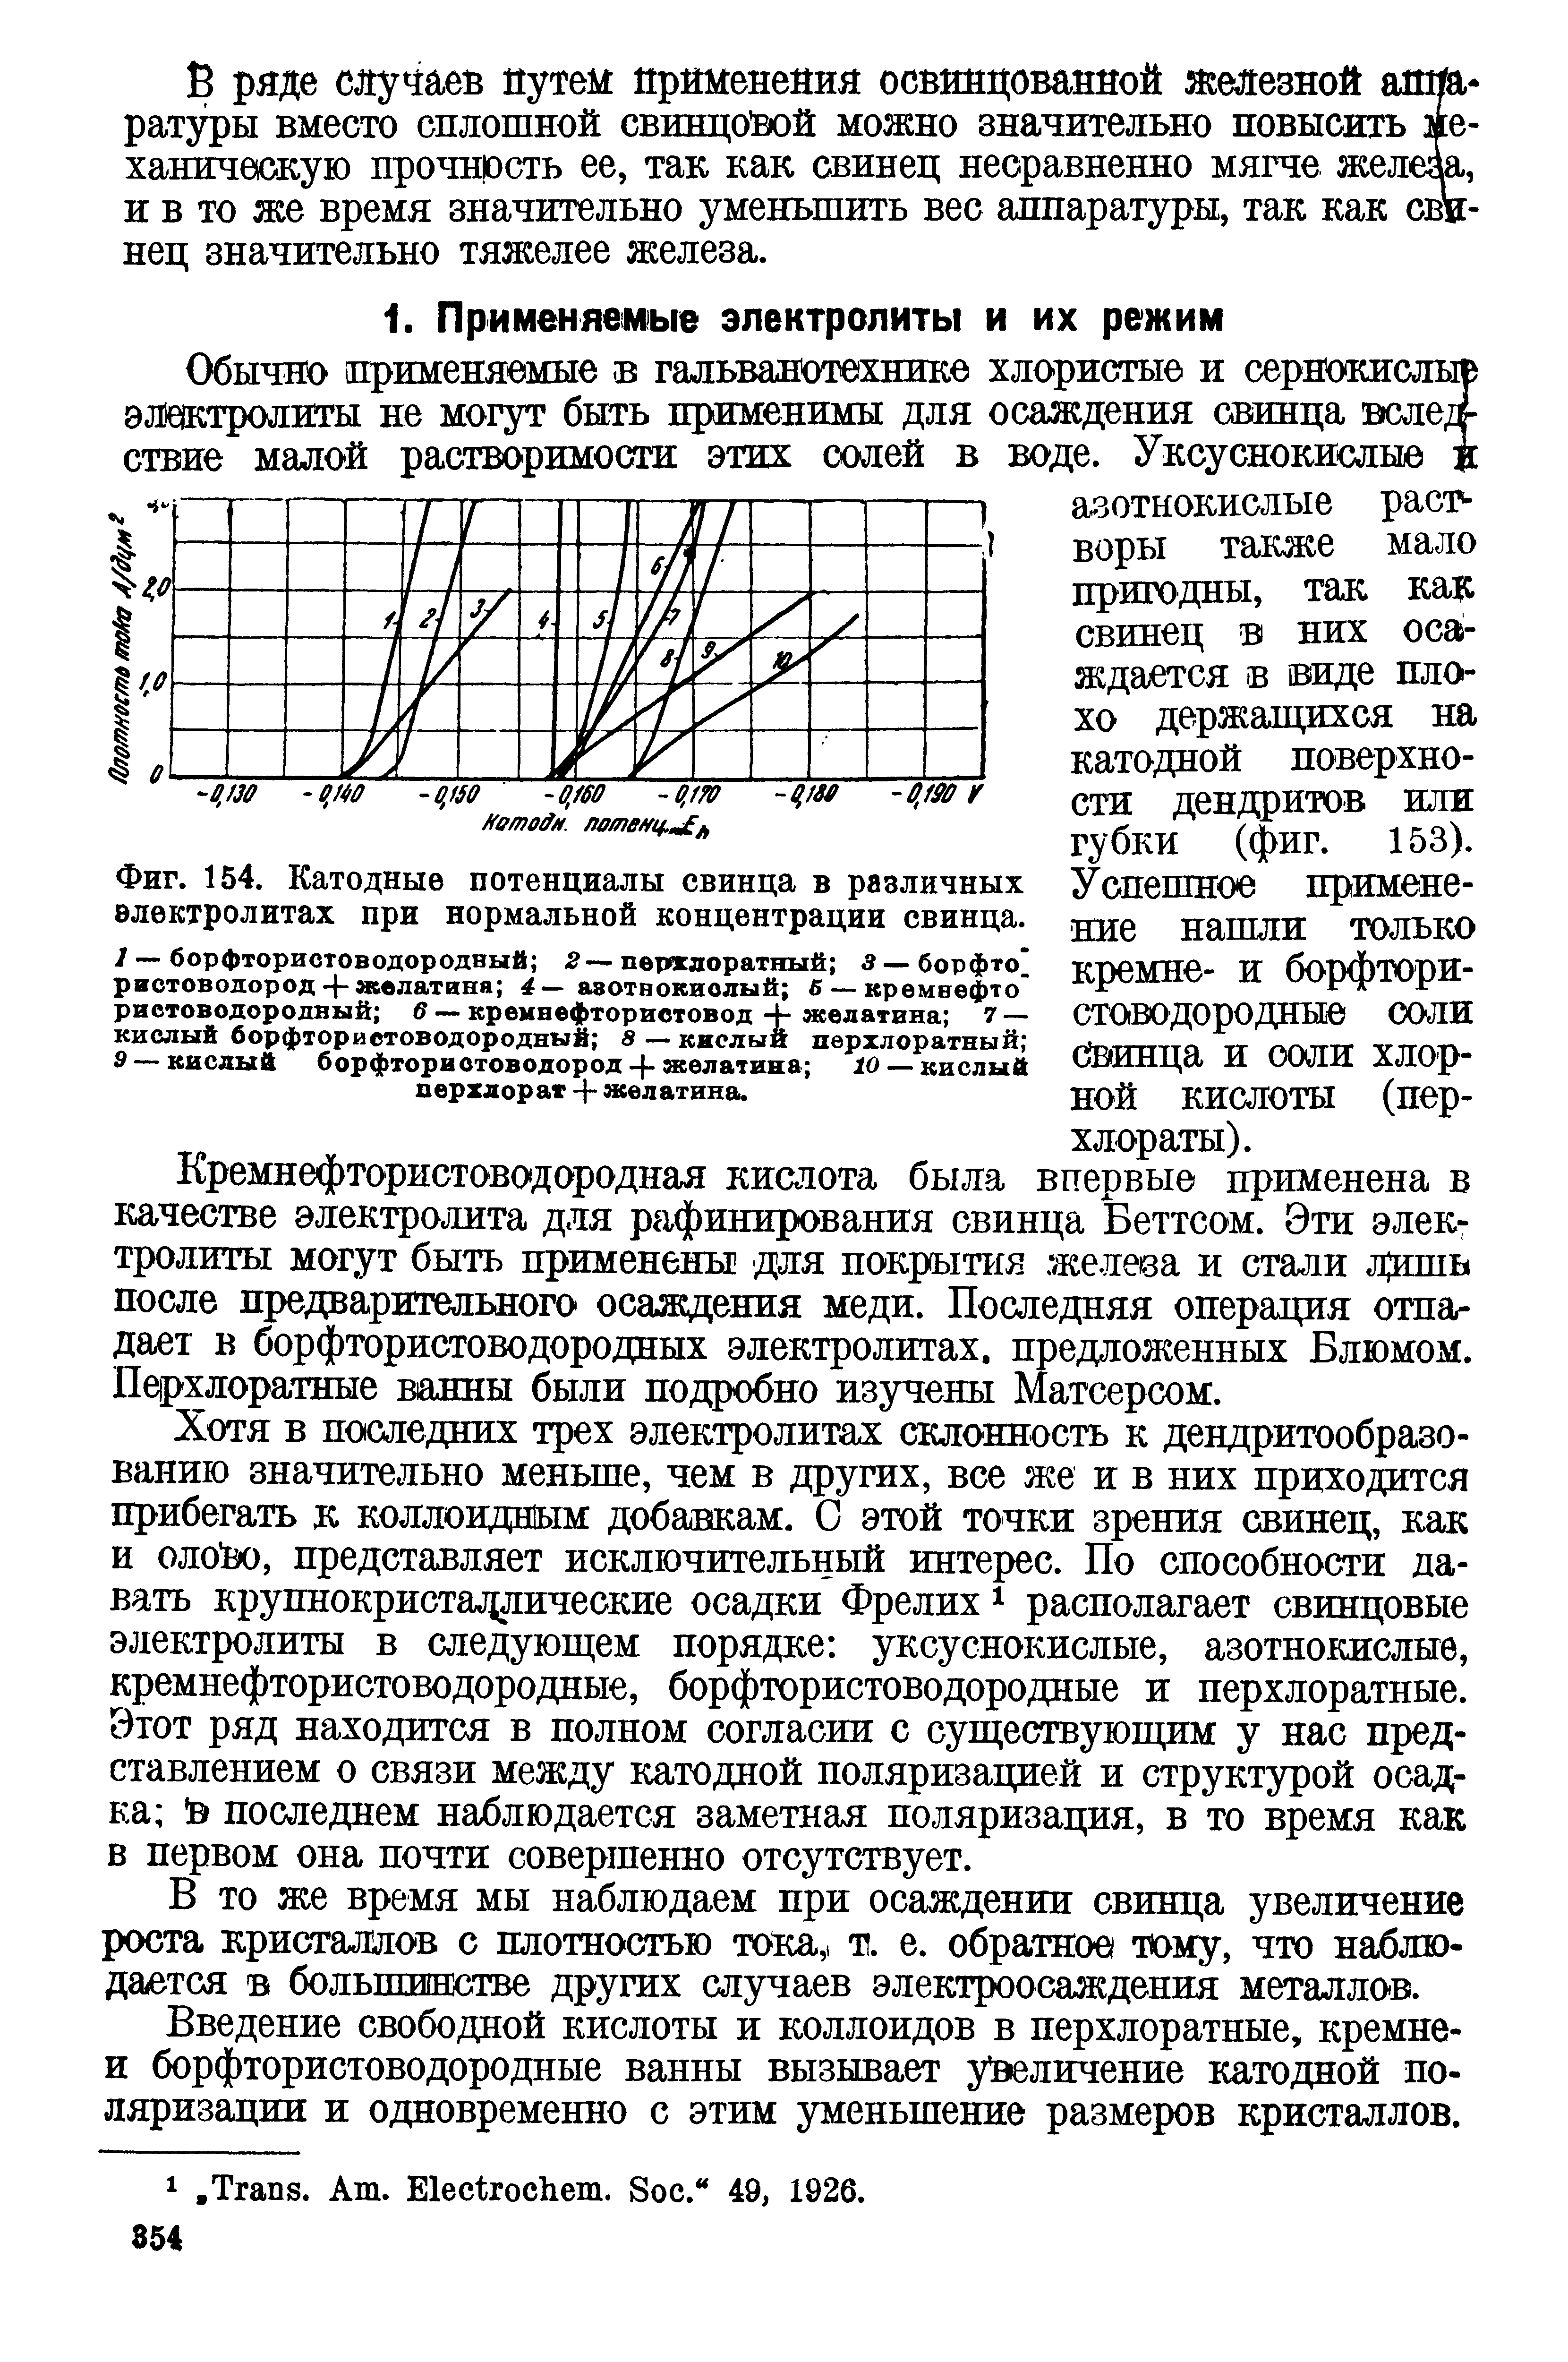 Фиг. 154. Катодные потенциалы свинца в различных электролитах при <a href="/info/194504">нормальной концентрации</a> свинца.
